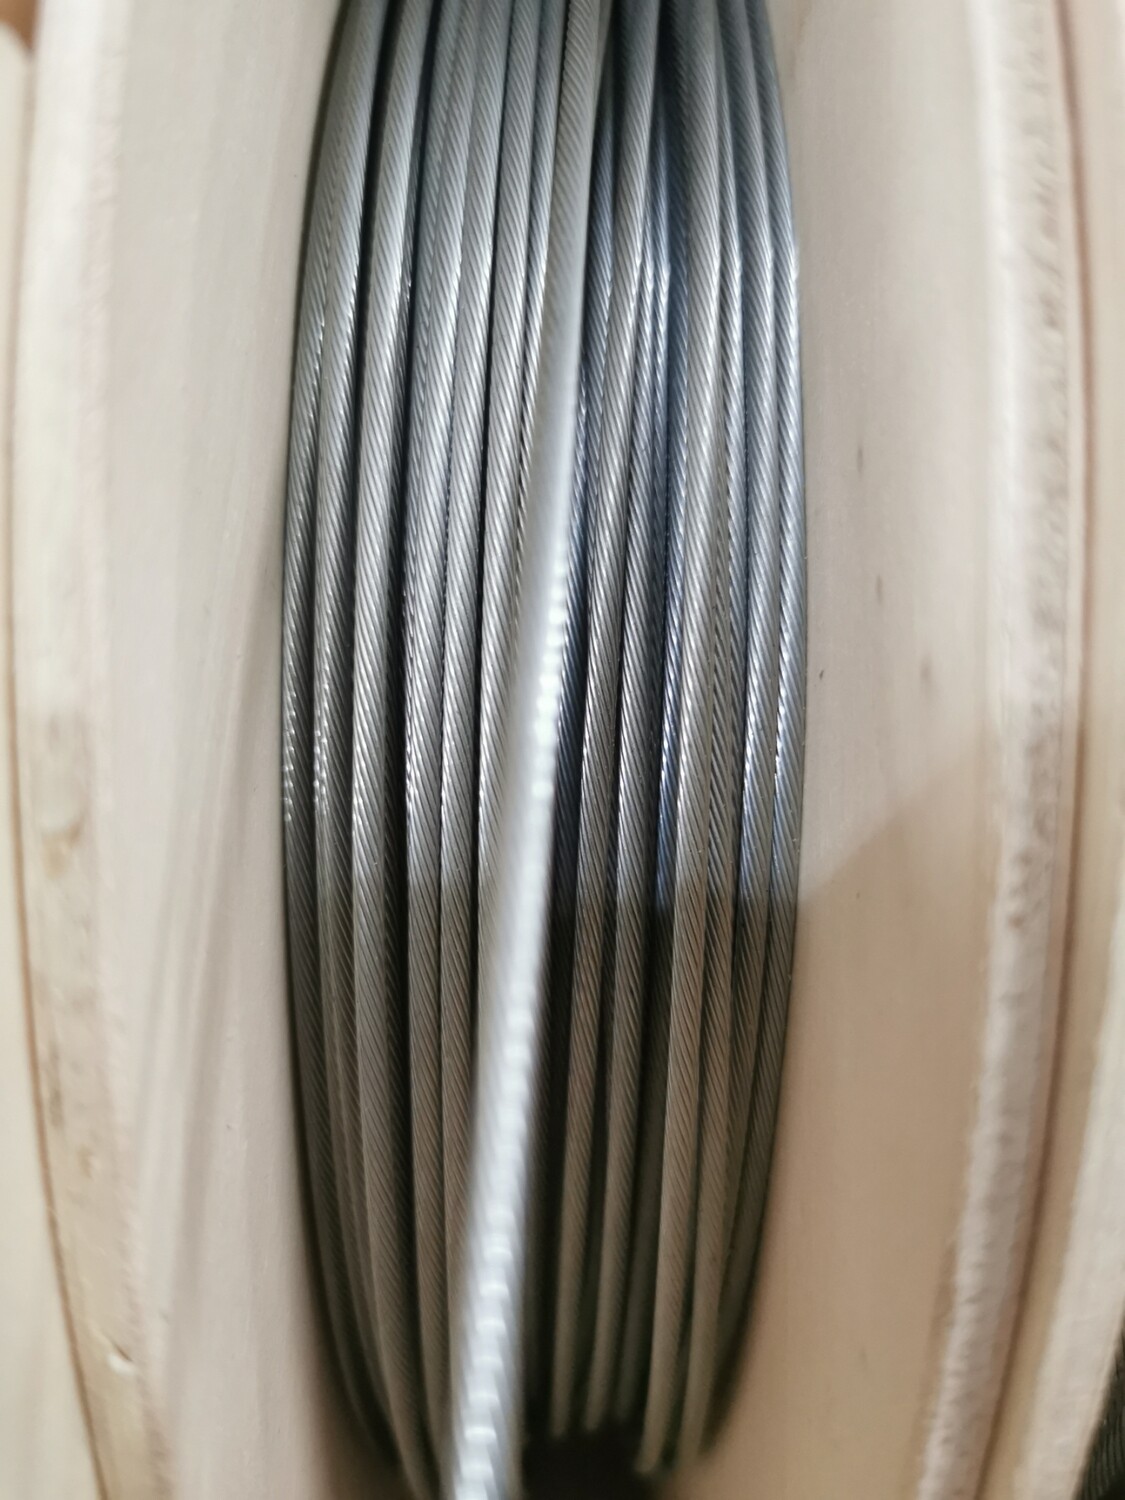 Bowdenzug Kabel 1,8mm Verzinkt